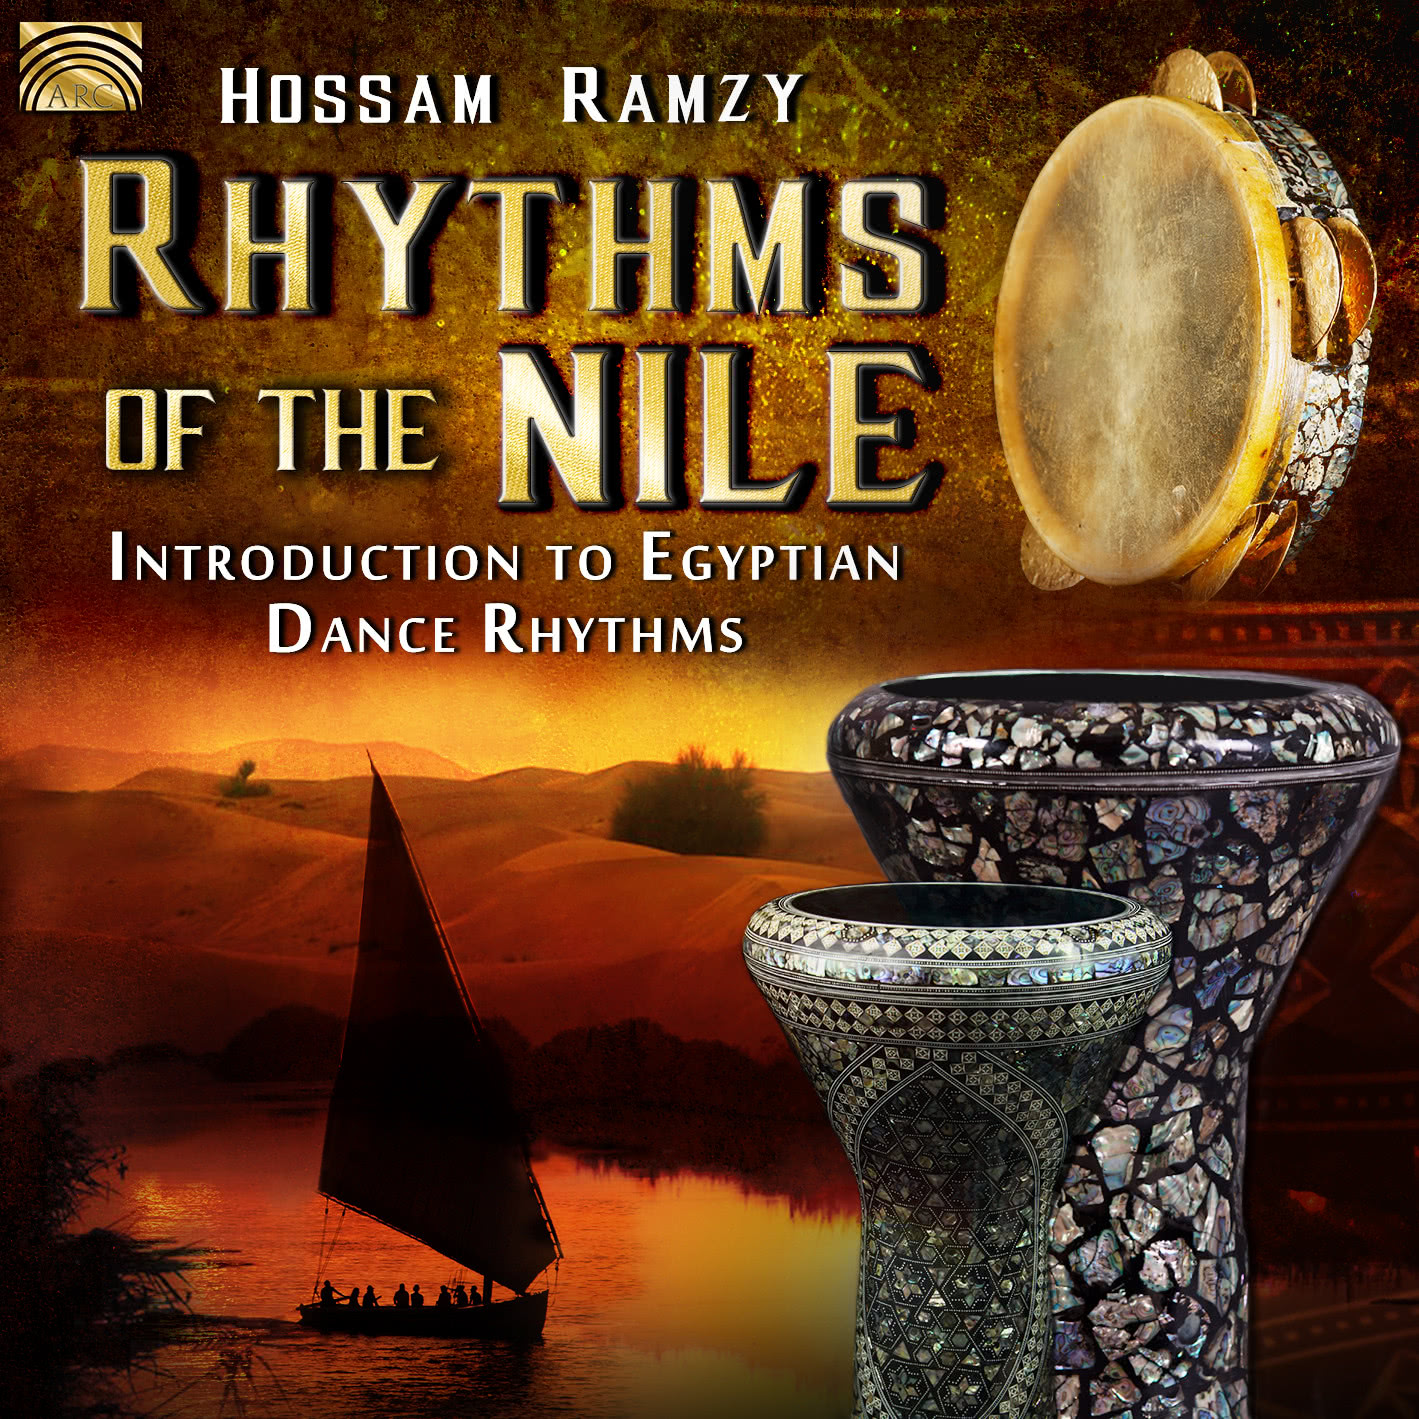 EUCD2659 Rhythms of the Nile - Introduction to Egyptian Dance Rhythms